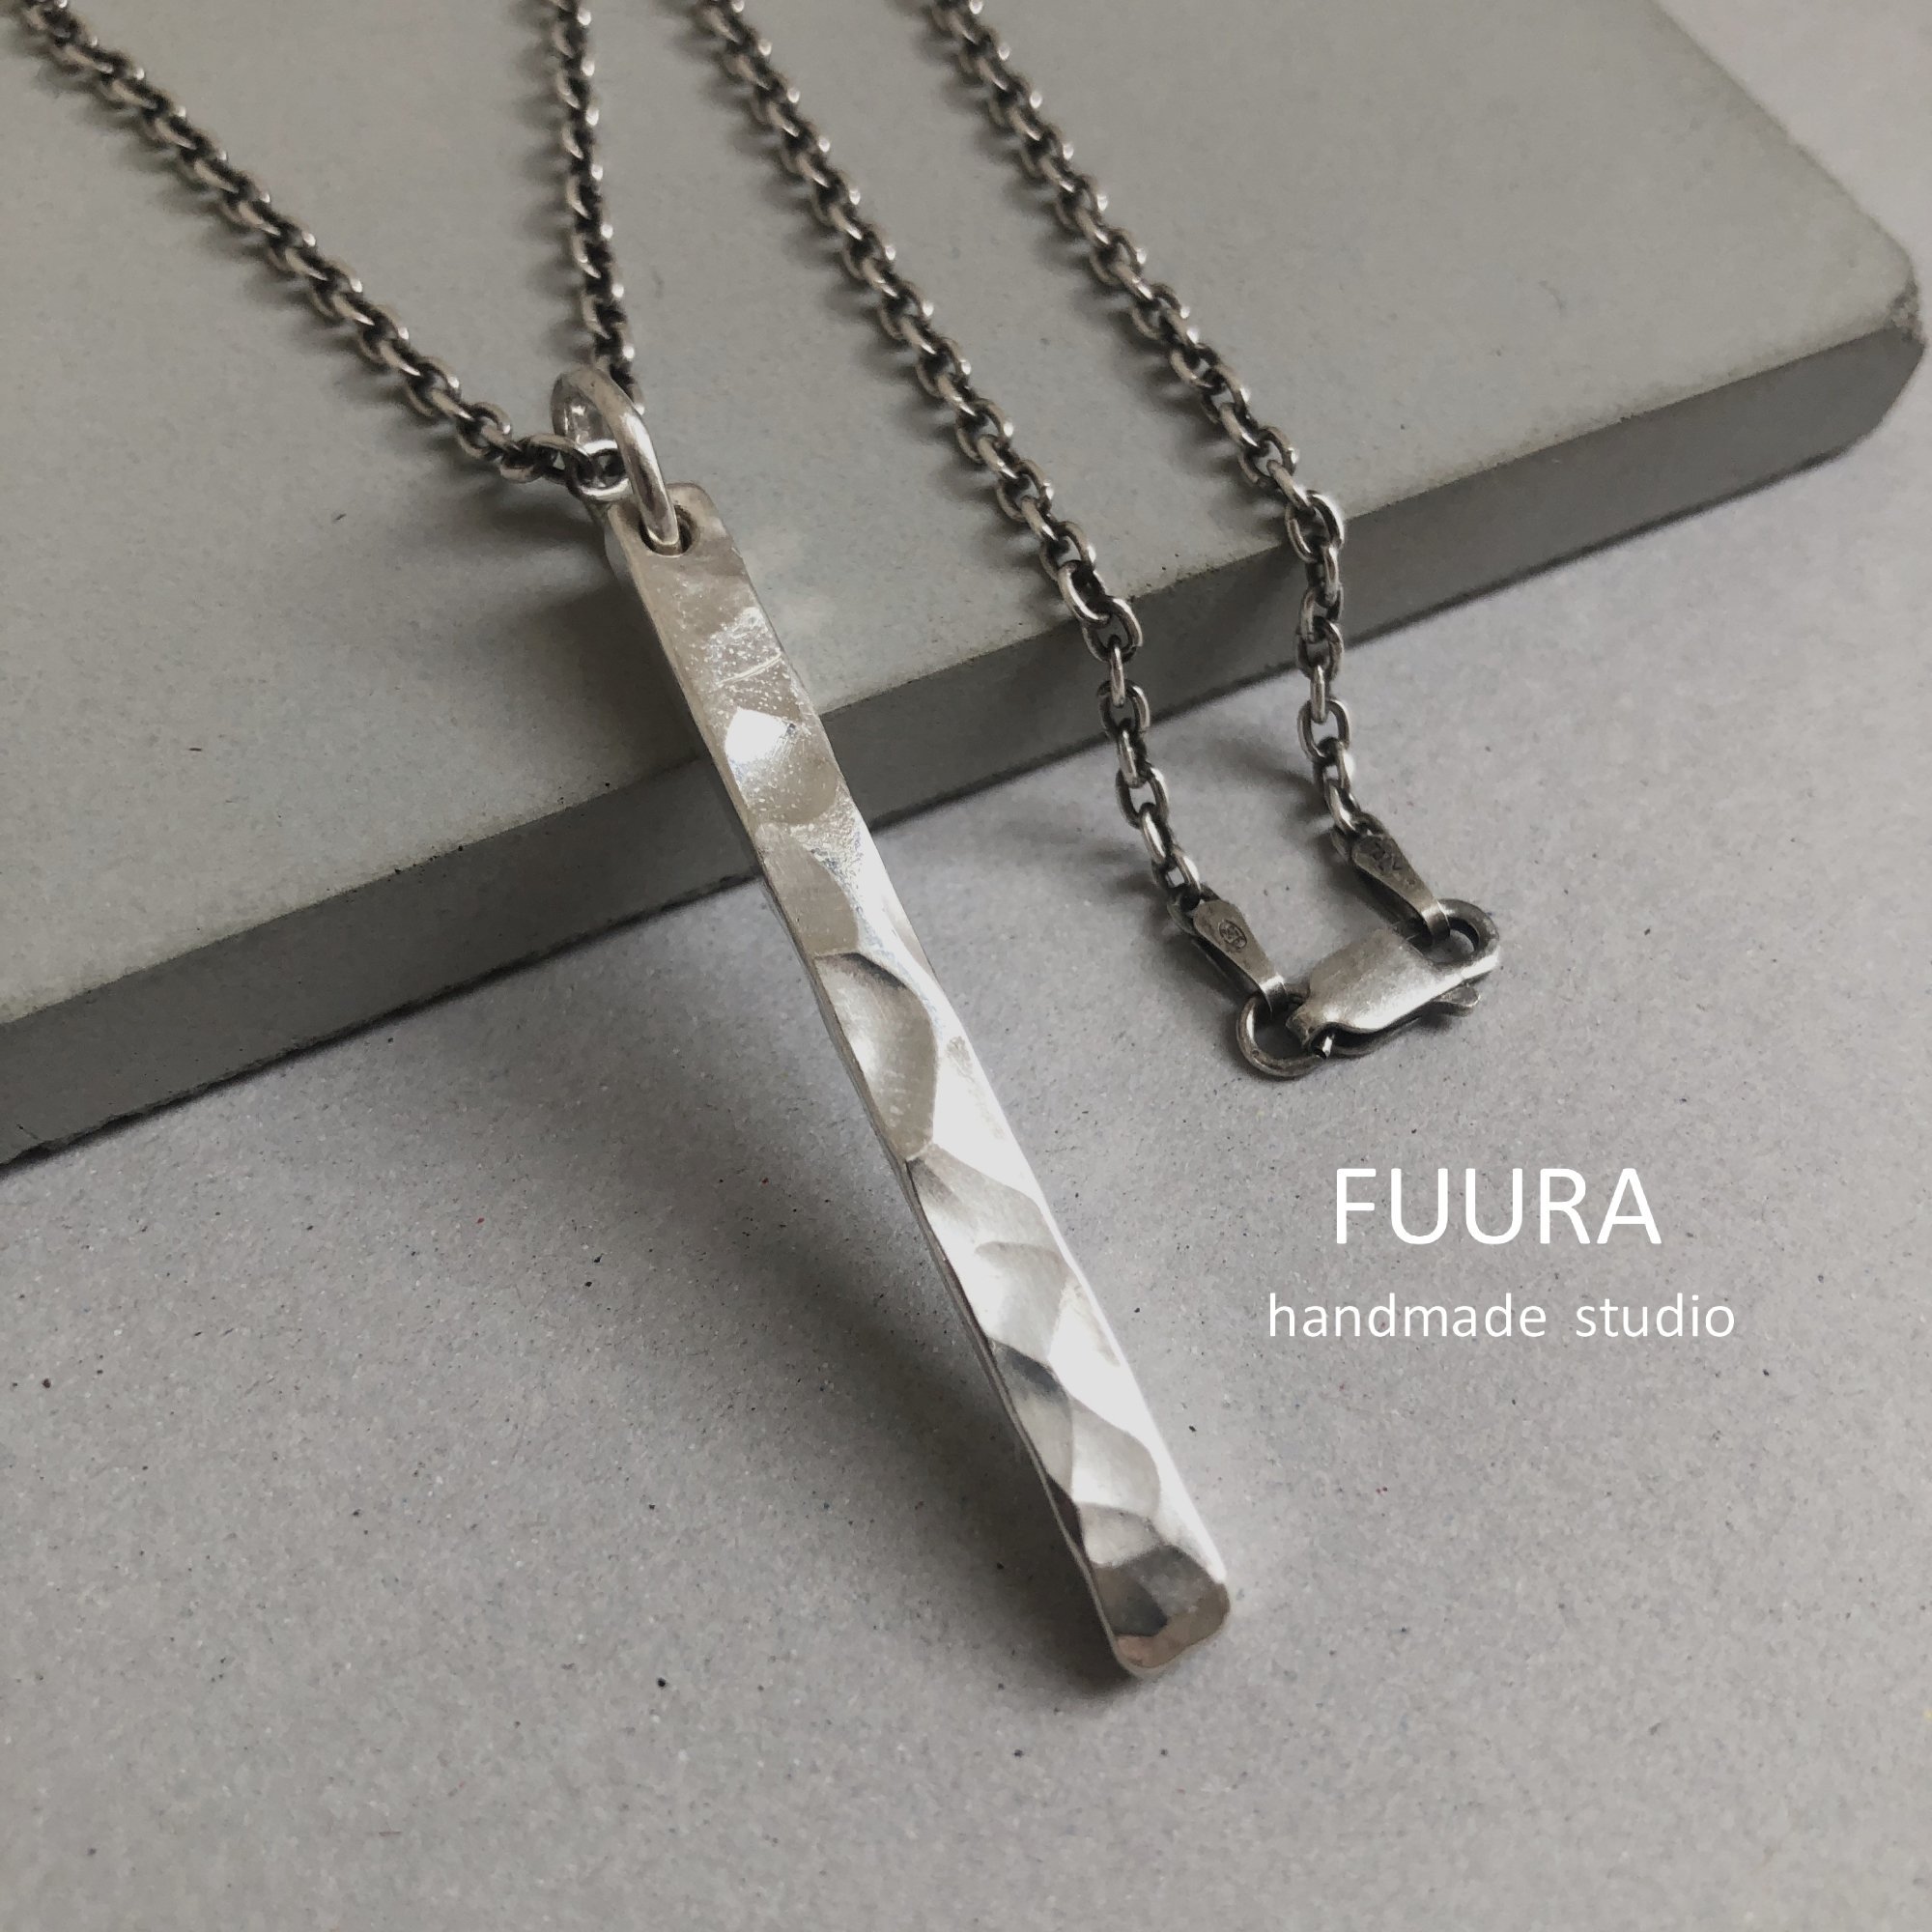 Silver necklace 4mm / シルバーネックレス 4mm - 一点ものおしゃれリング 普段使いシンプル大人アクセサリー【FUURA】